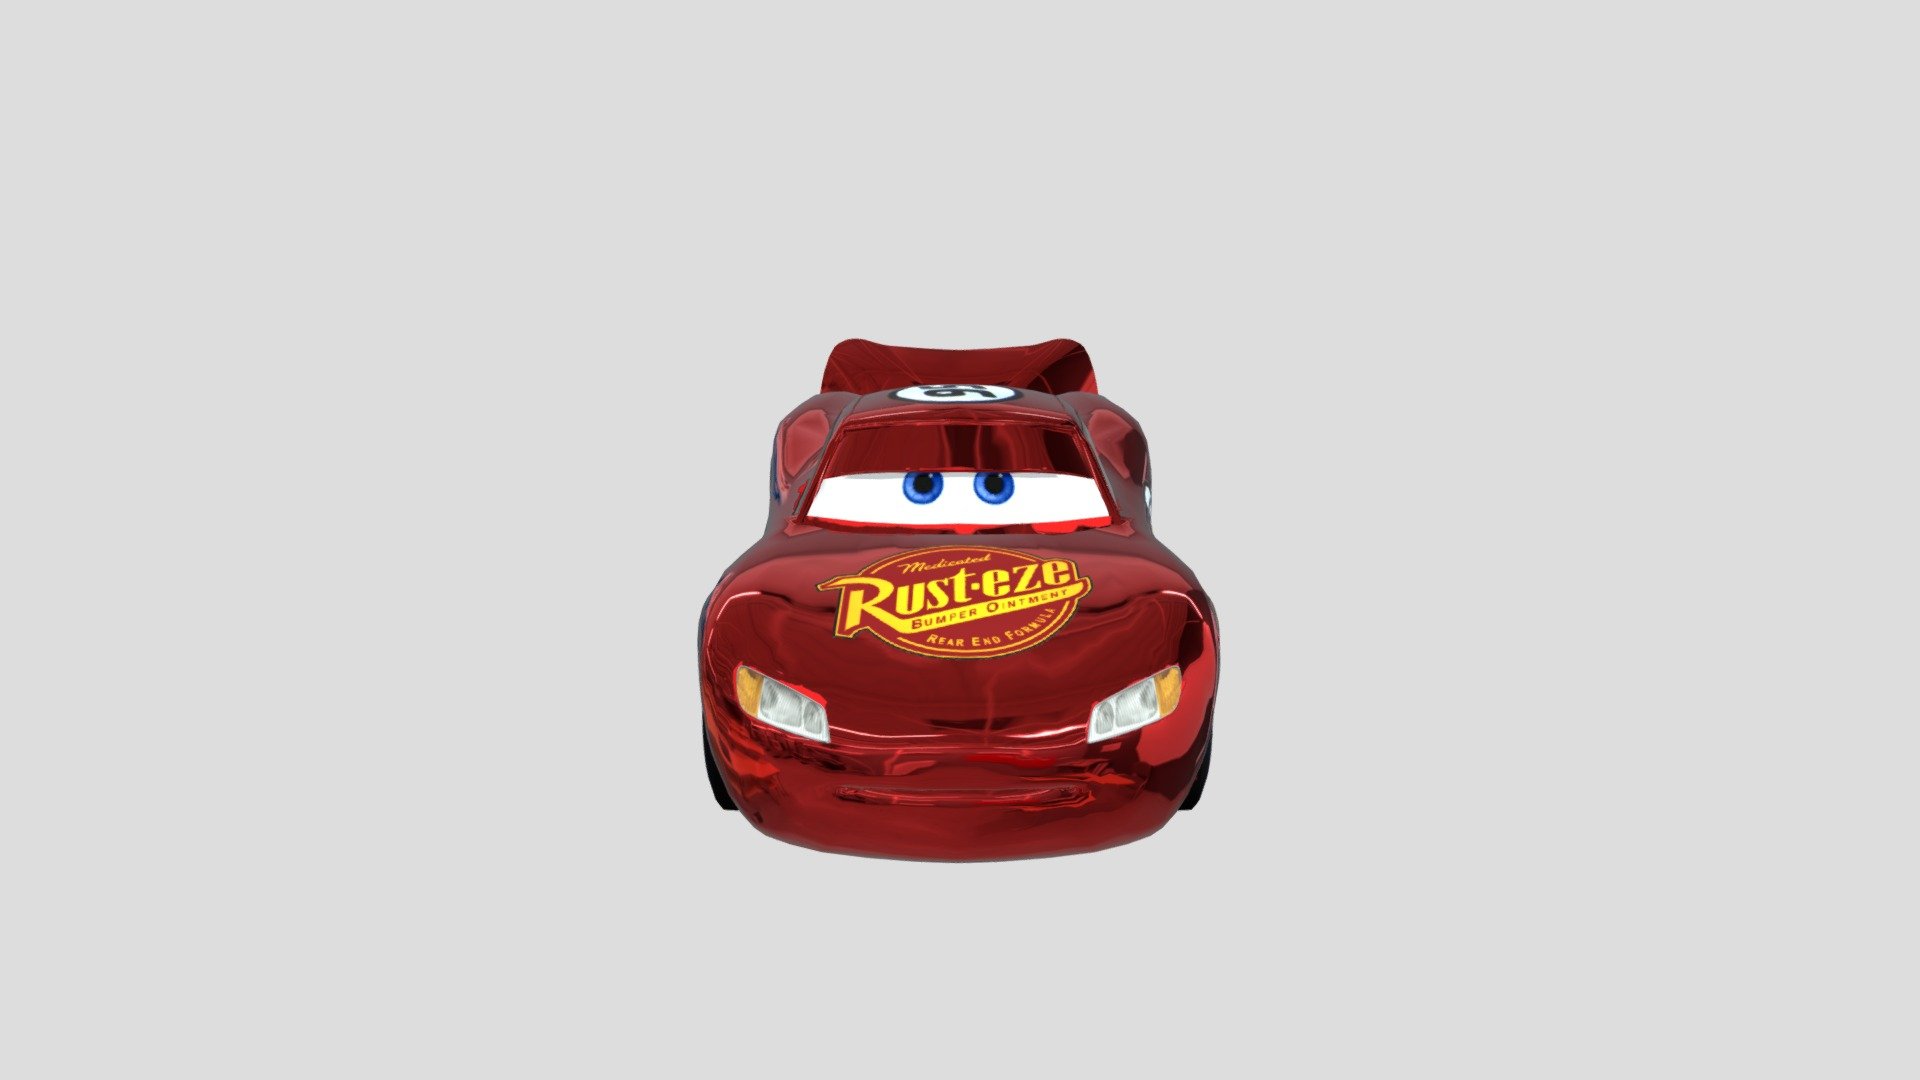 - Radiator Springs Lighting Mcqueen - 3D model by danigamer495channel 3d model